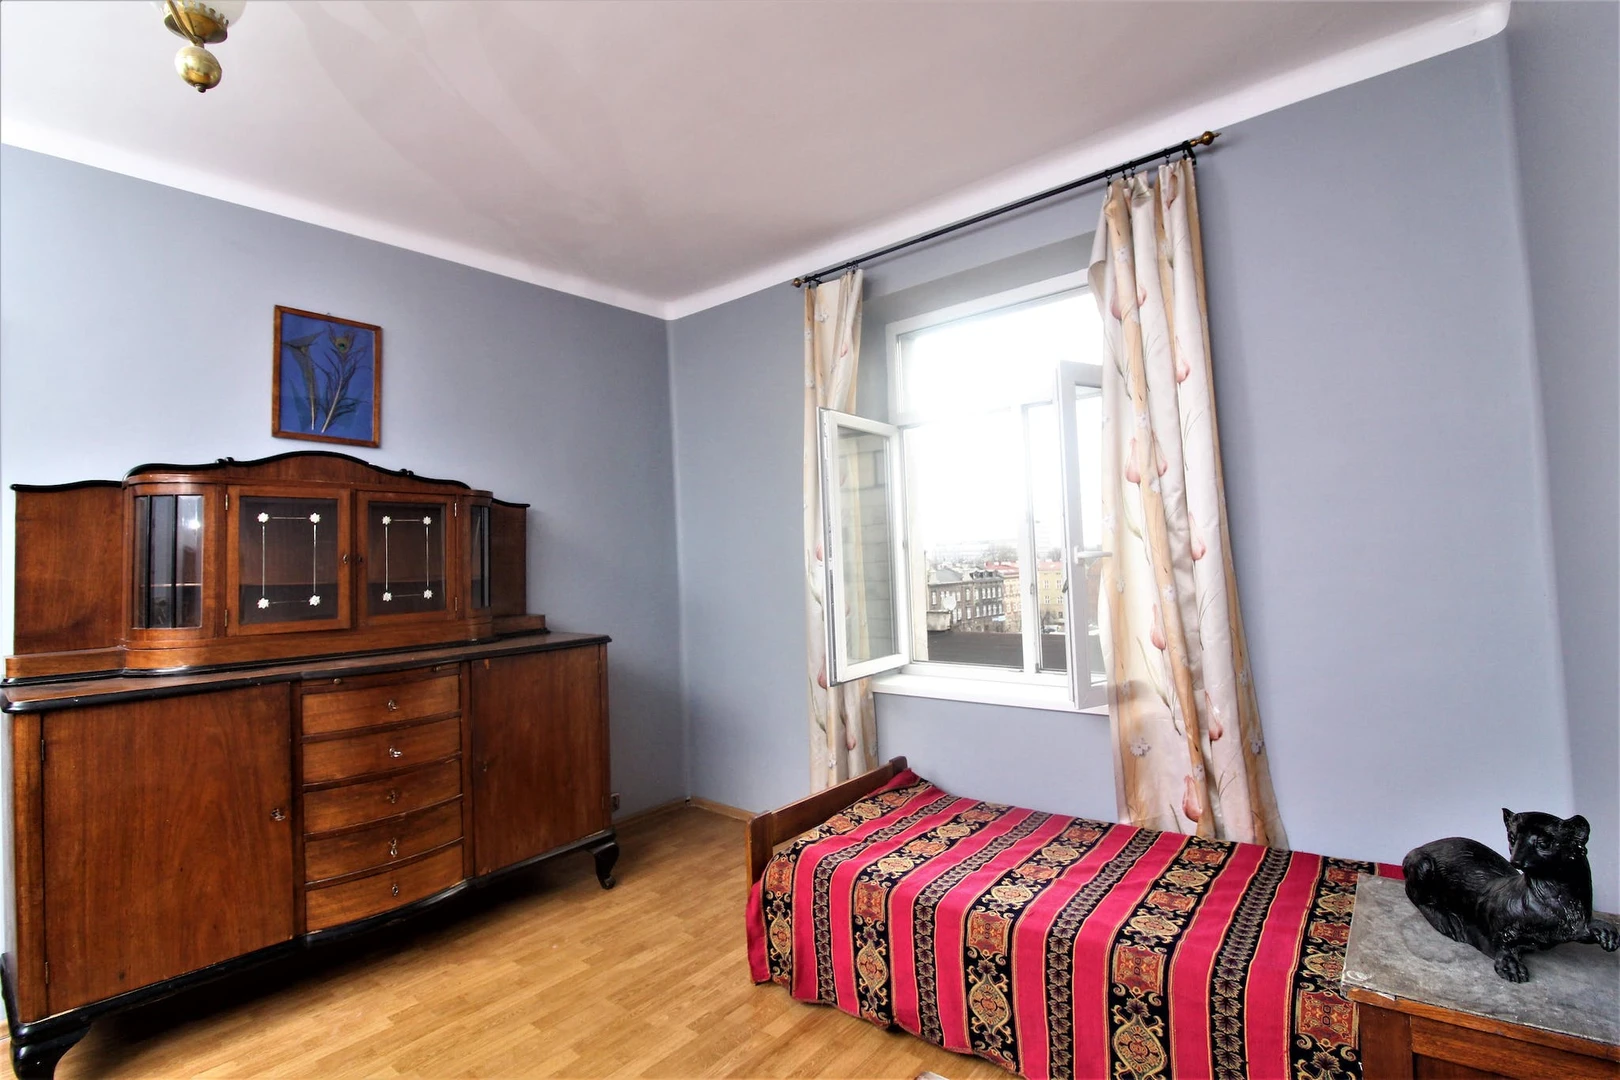 Chambre à louer avec lit double Cracovie